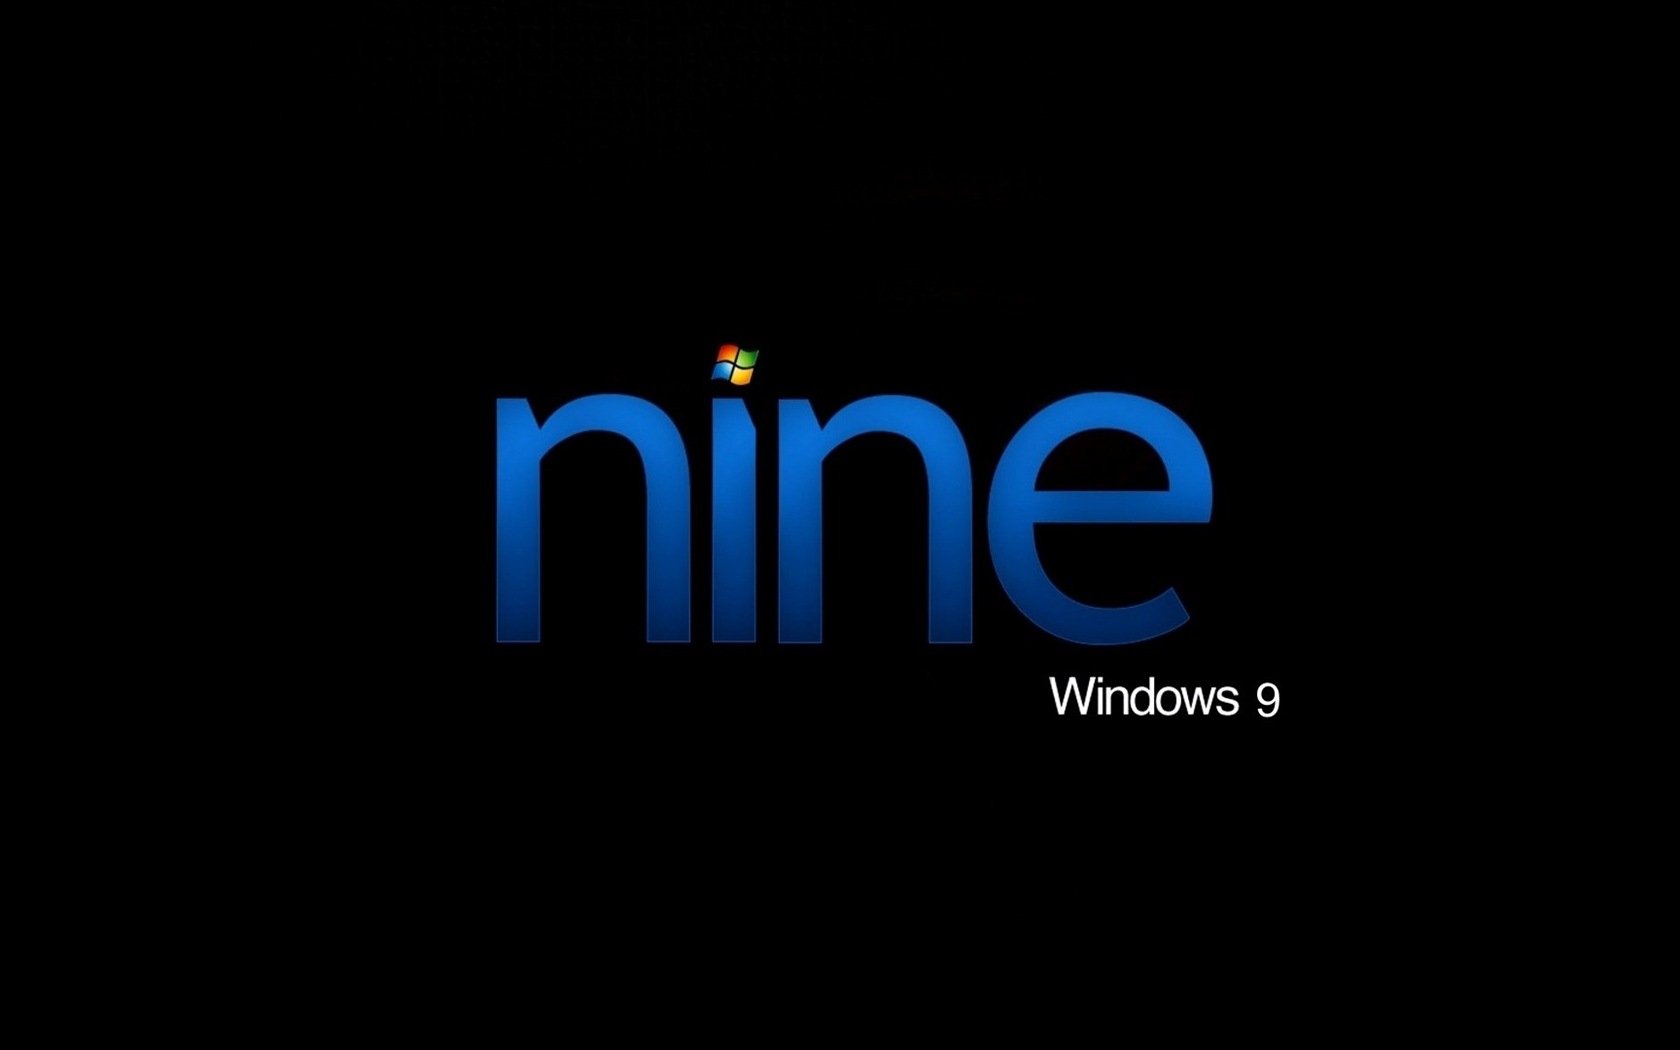 微软 Windows 9 系统主题 高清壁纸18 - 1680x1050